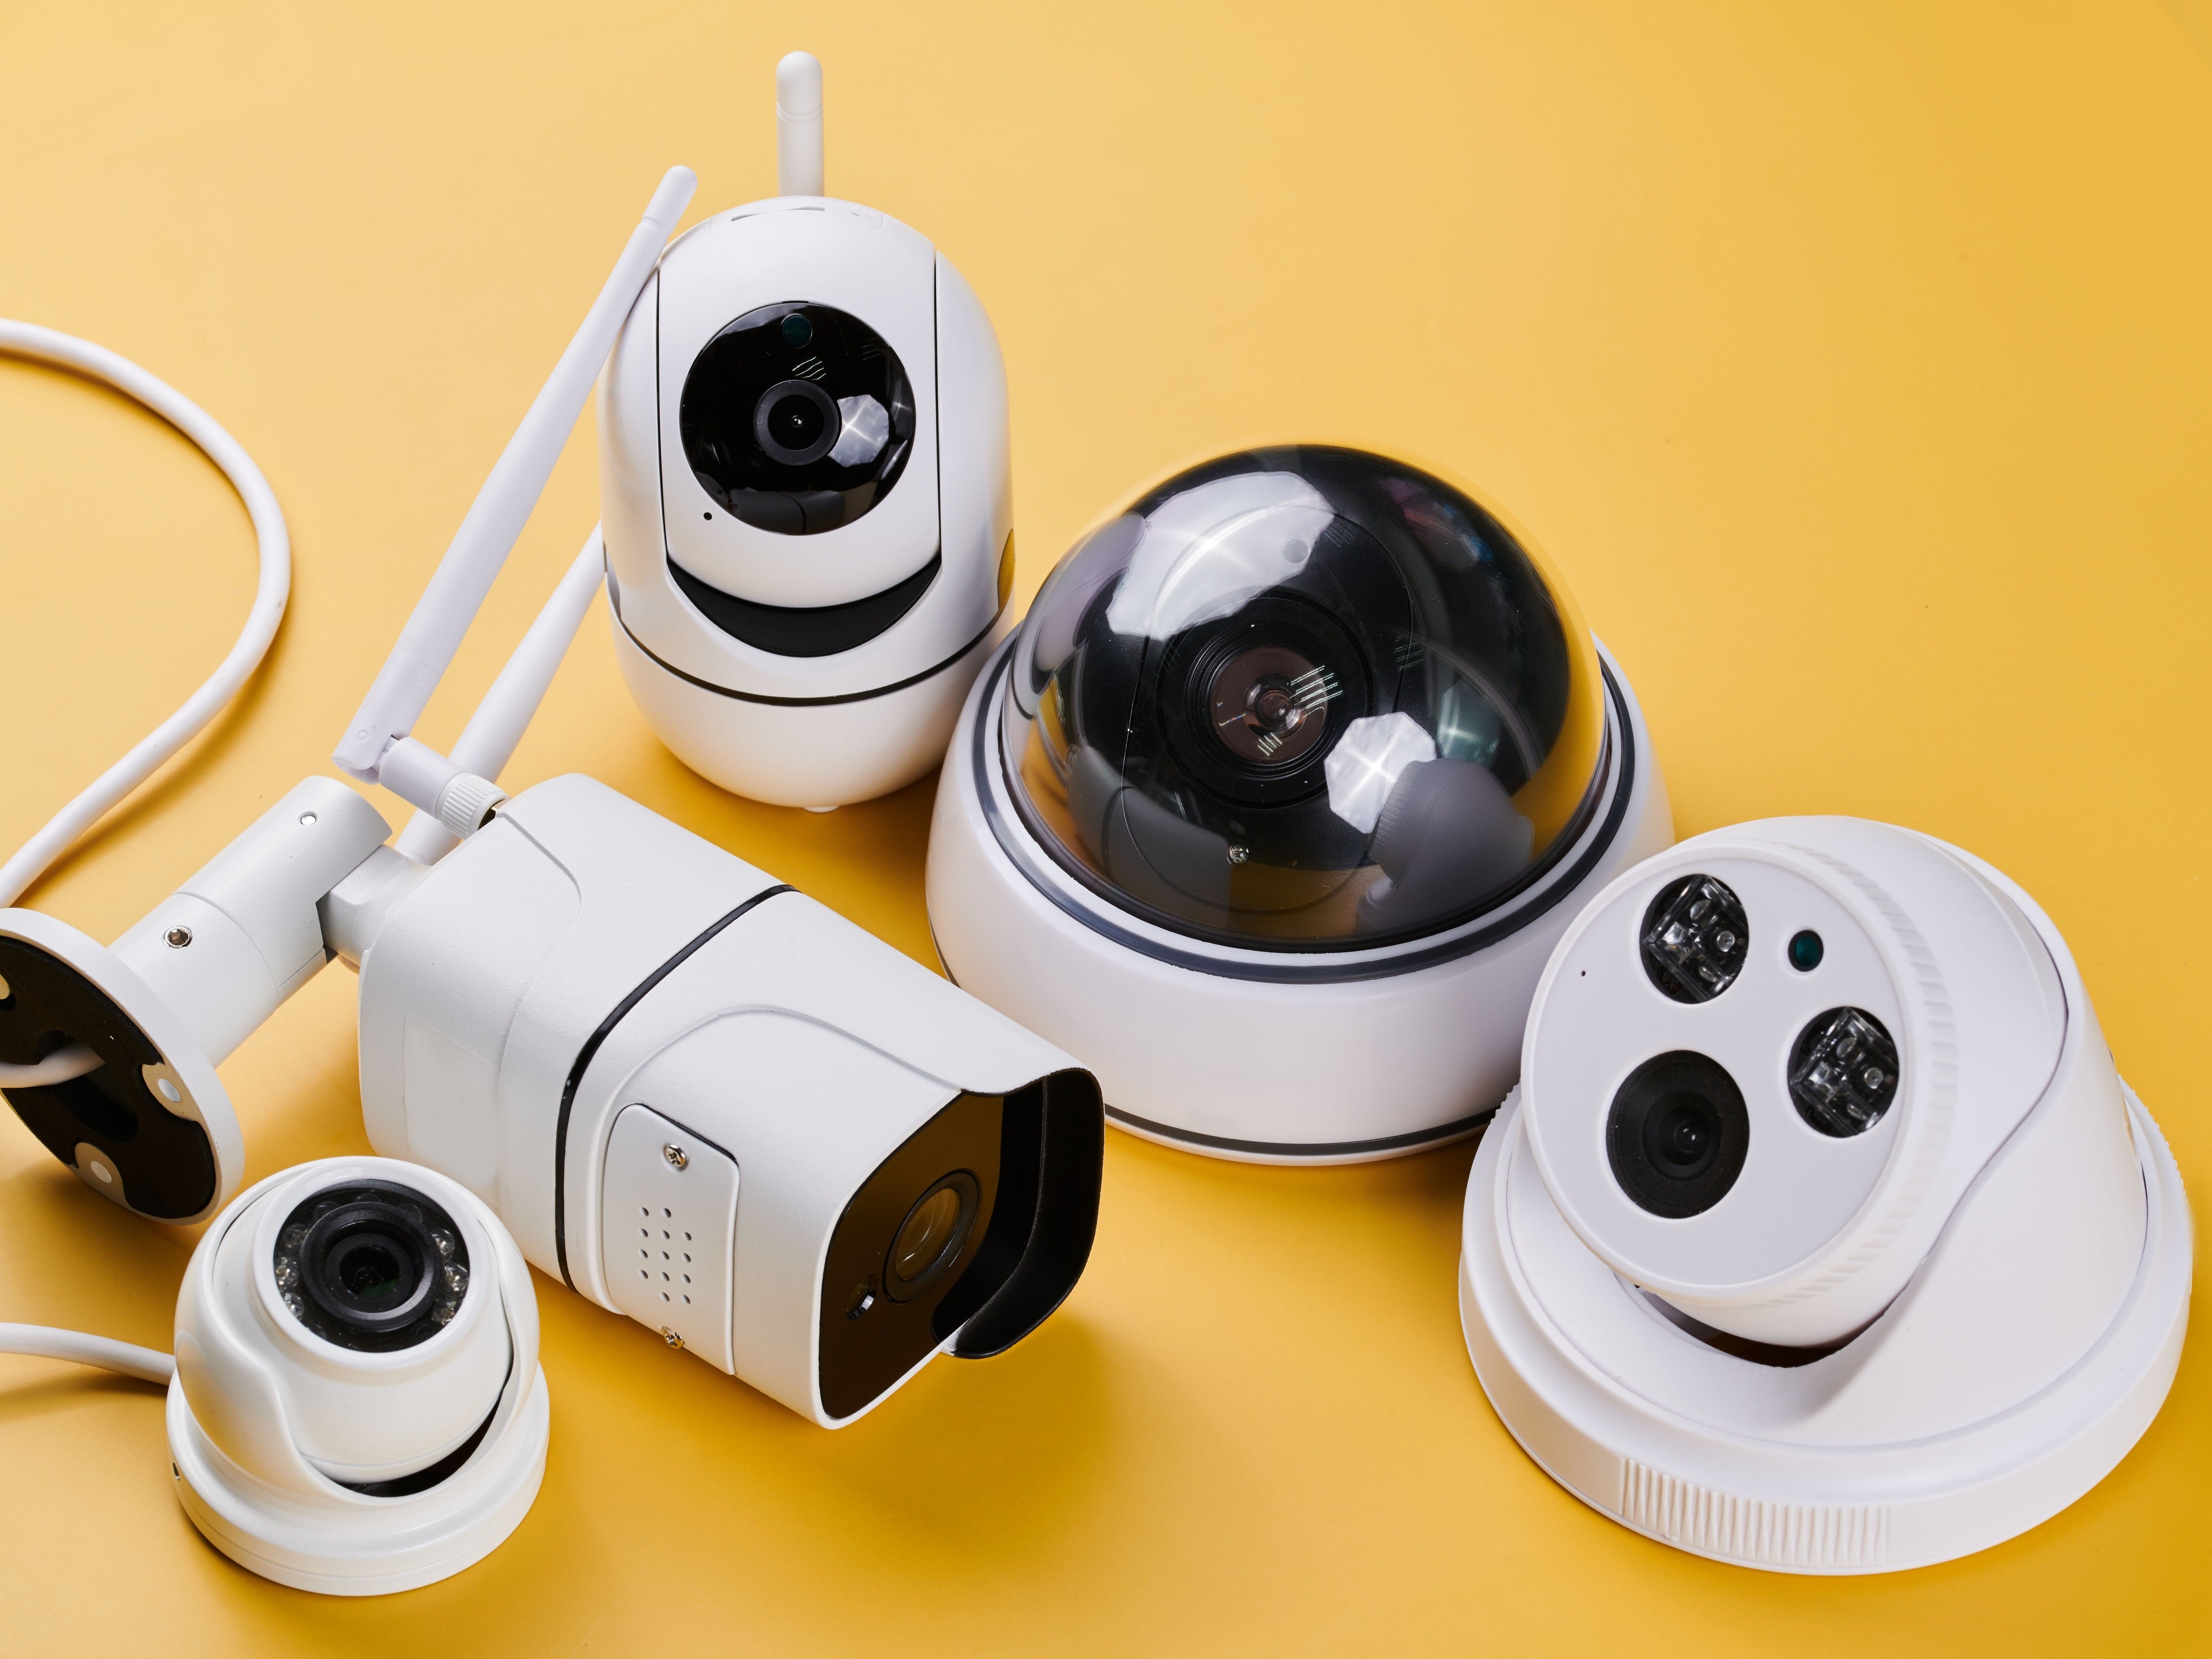 #Jetzt illegal: Diese Kameras darfst du nicht mehr benutzen